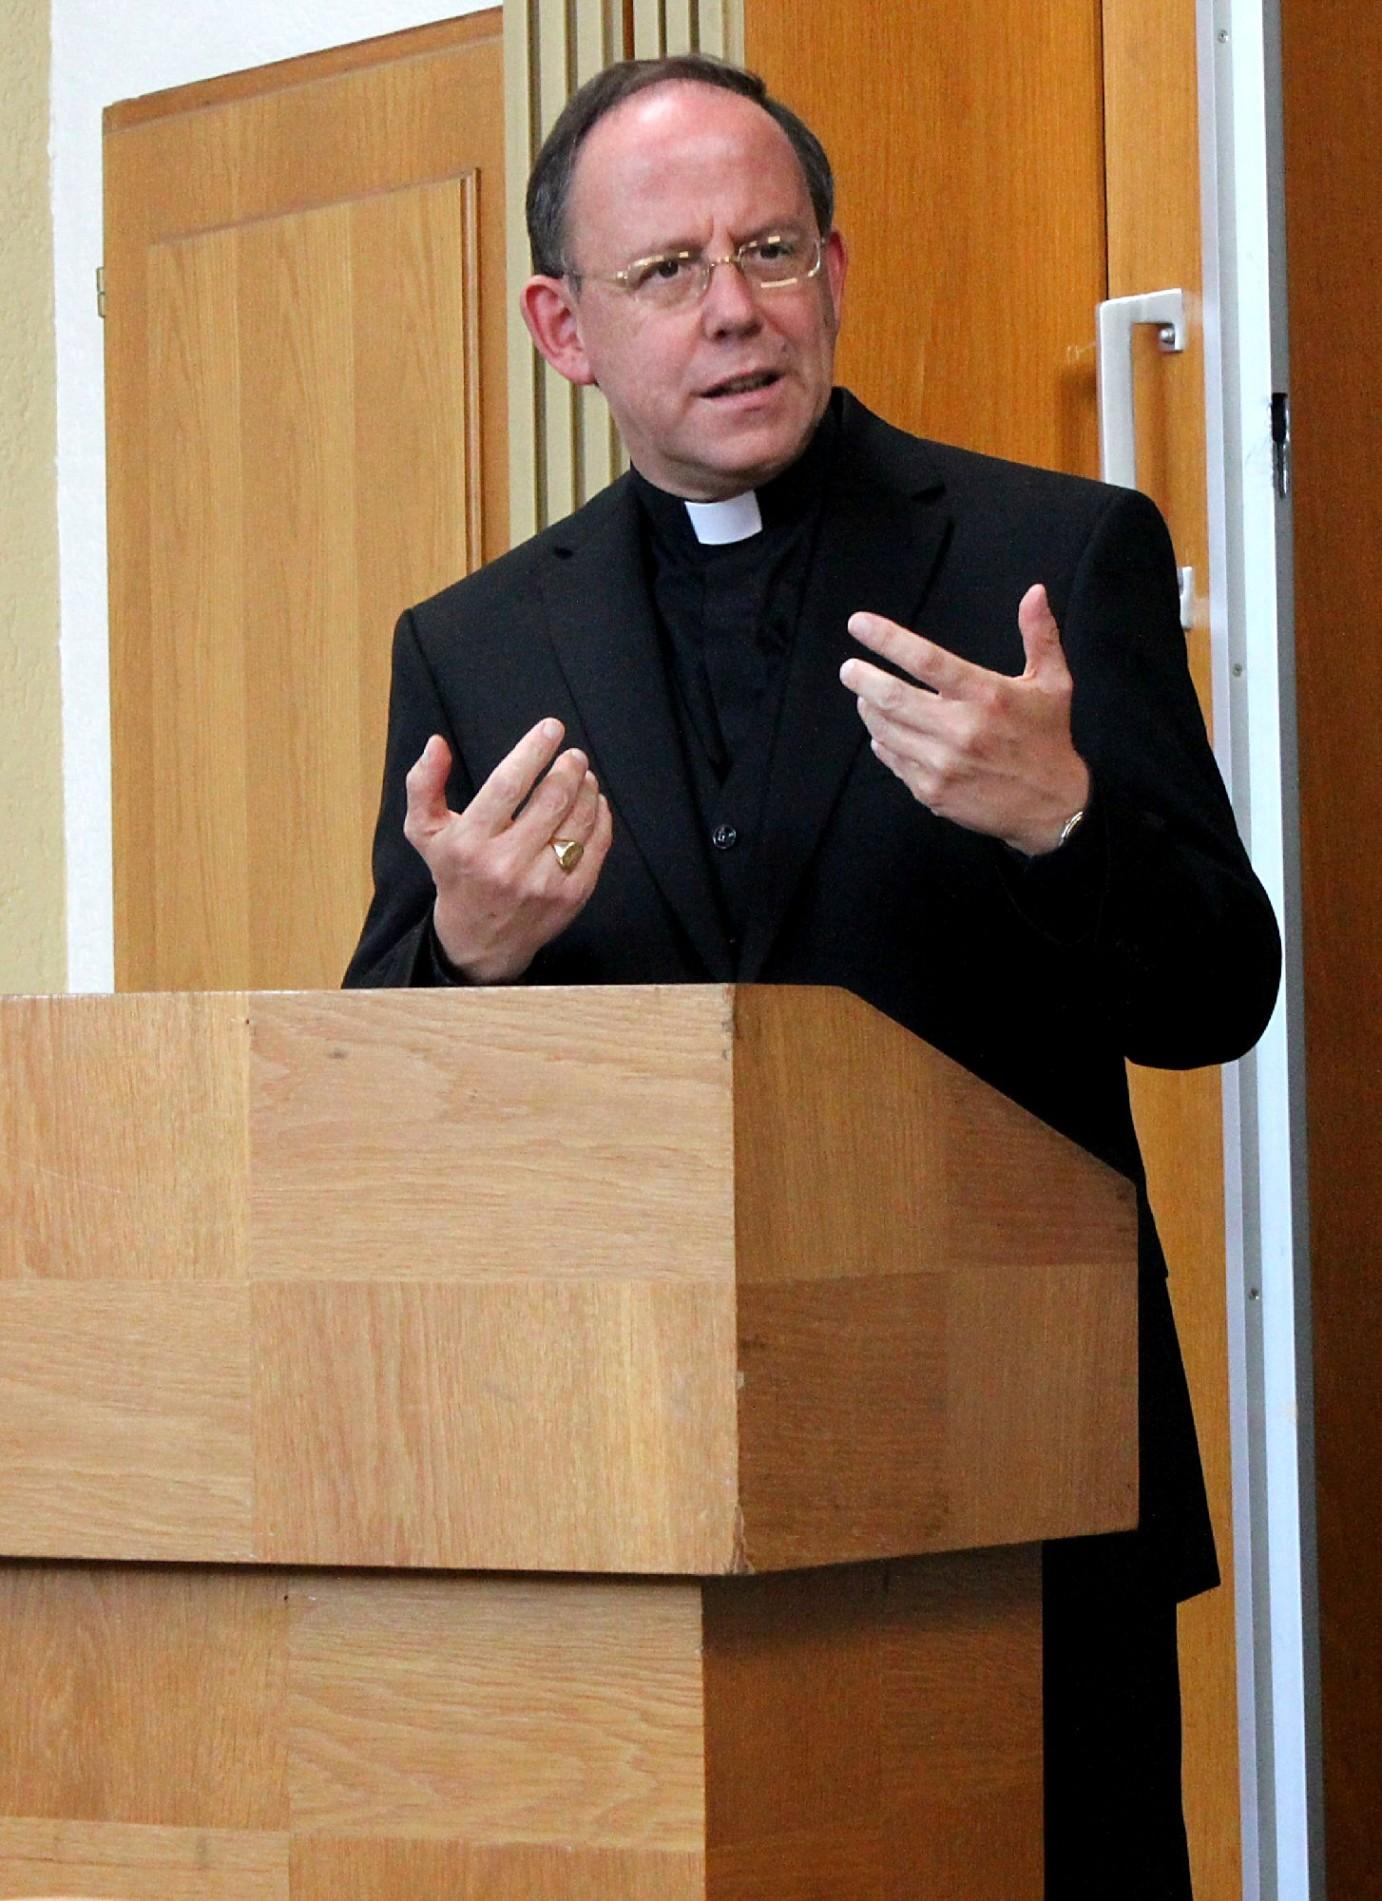 Groß-Gerau, 19.9.2012: Weihbischof Dr. Ulrich Neymeyr bei seinem Vortrag im Rahmen der Schlusskonferenz für das katholische Dekanat Rüsselsheim.